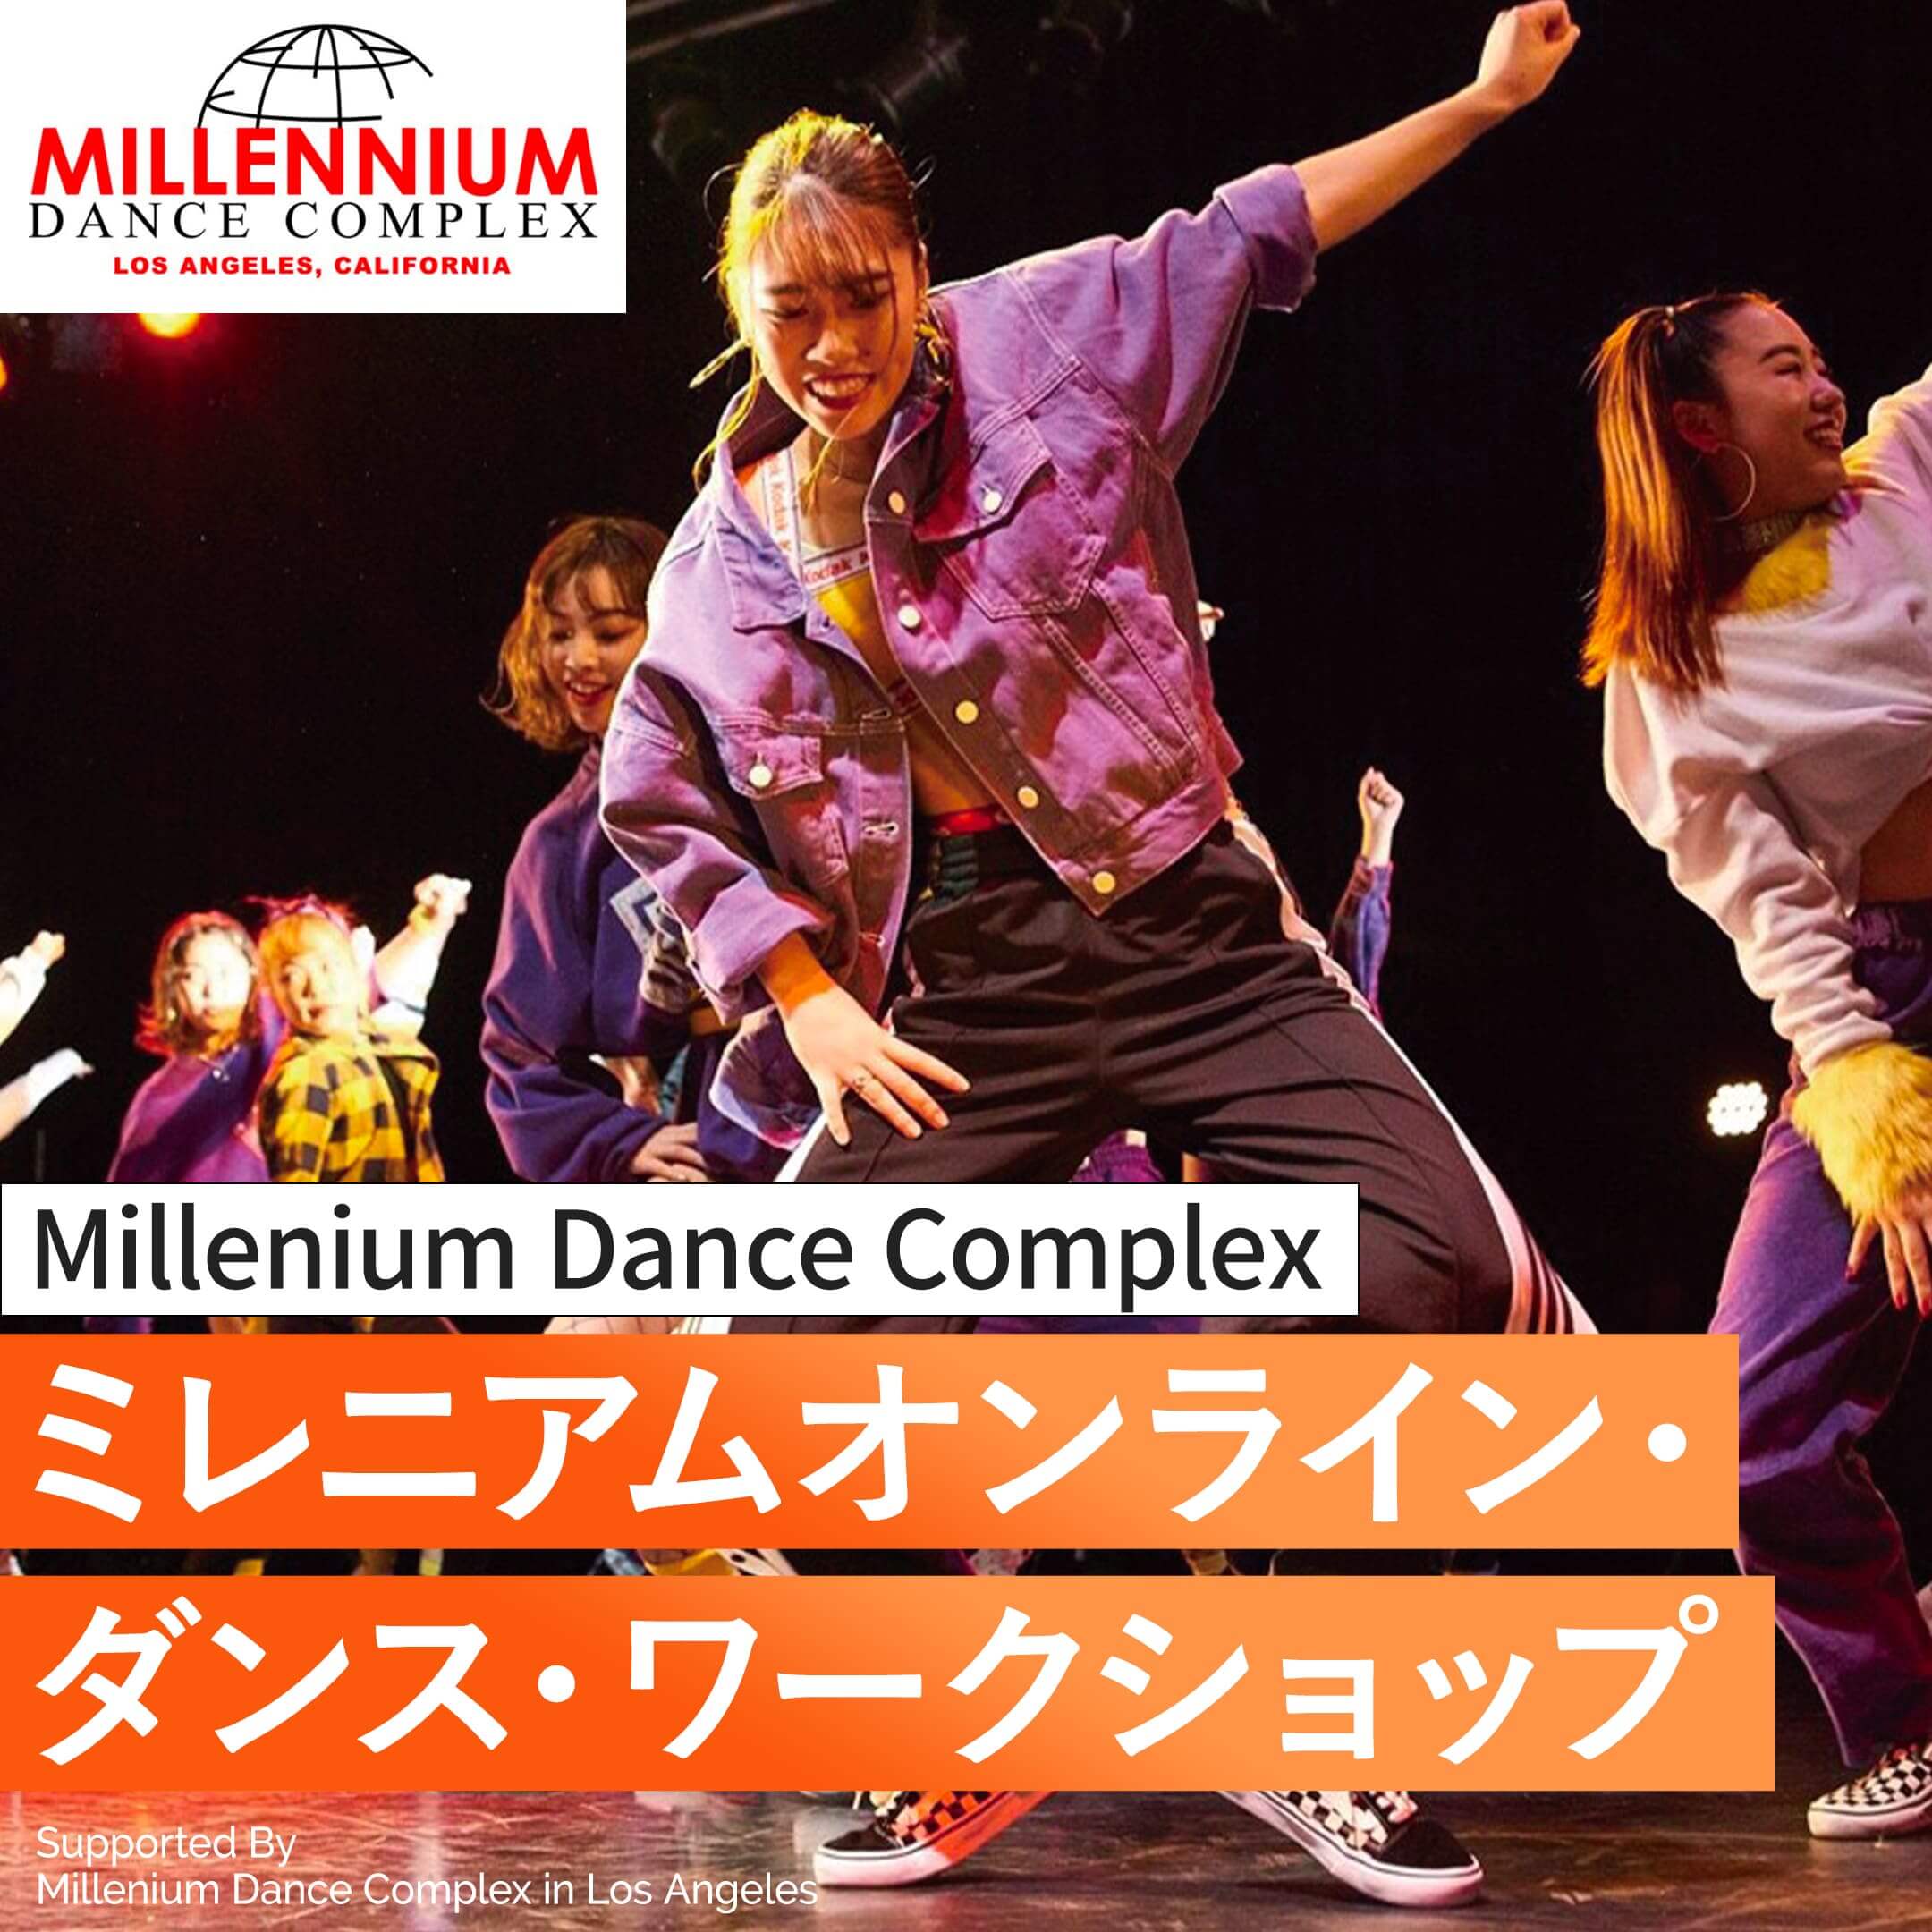 ダンスの専門学校 プロデビューを目指す Tsm 東京スクールオブミュージック ダンス専門学校